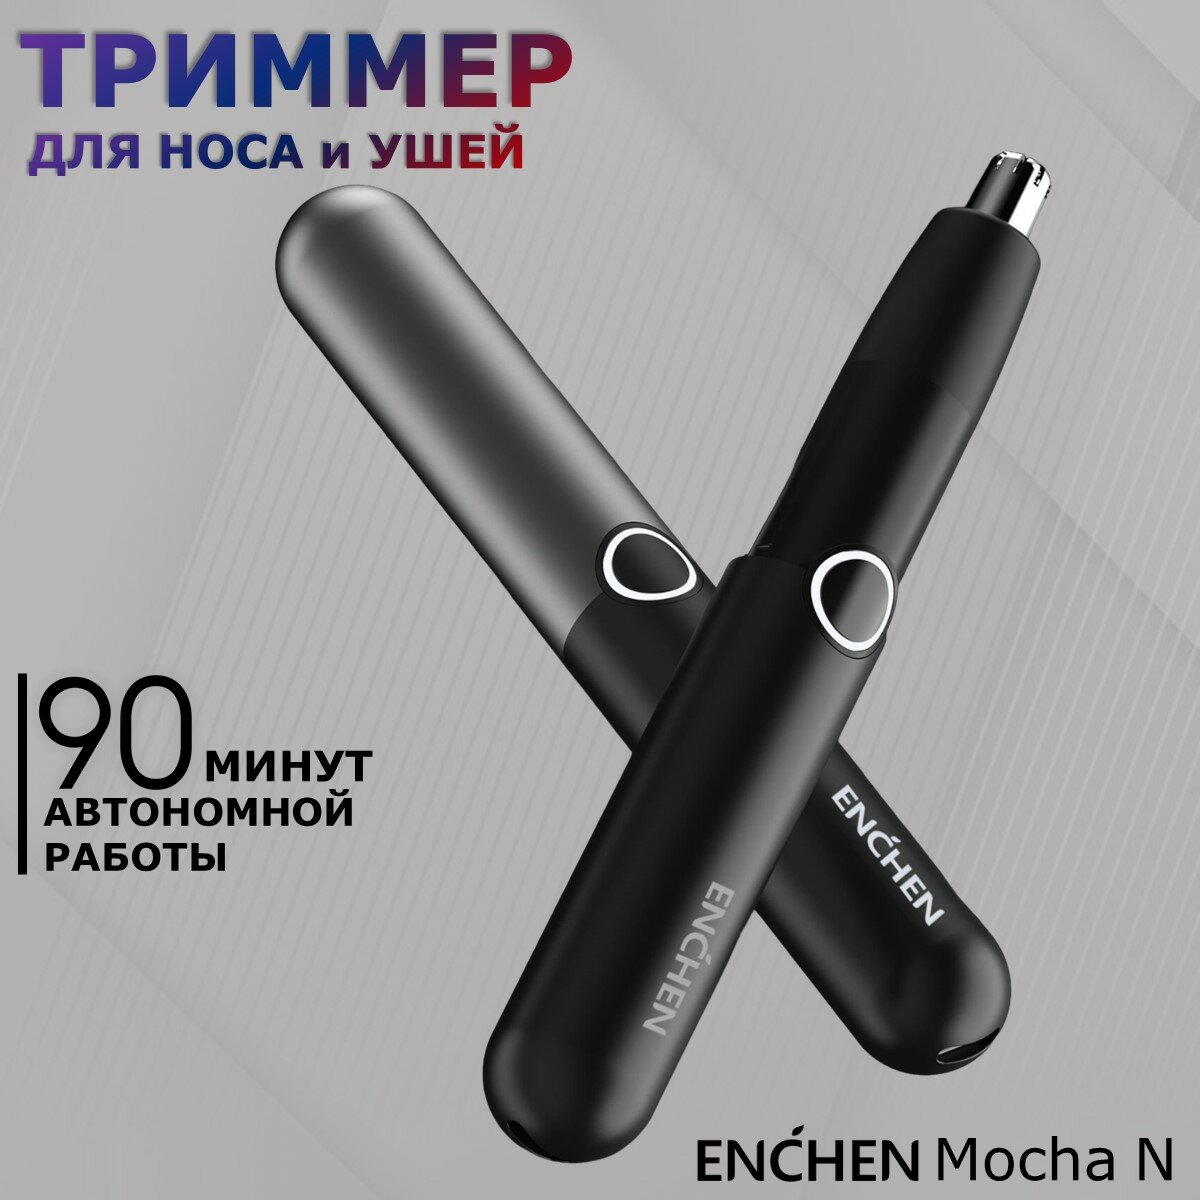 Триммер для носа и ушей Enchen Mocha N со встроенным аккумулятором